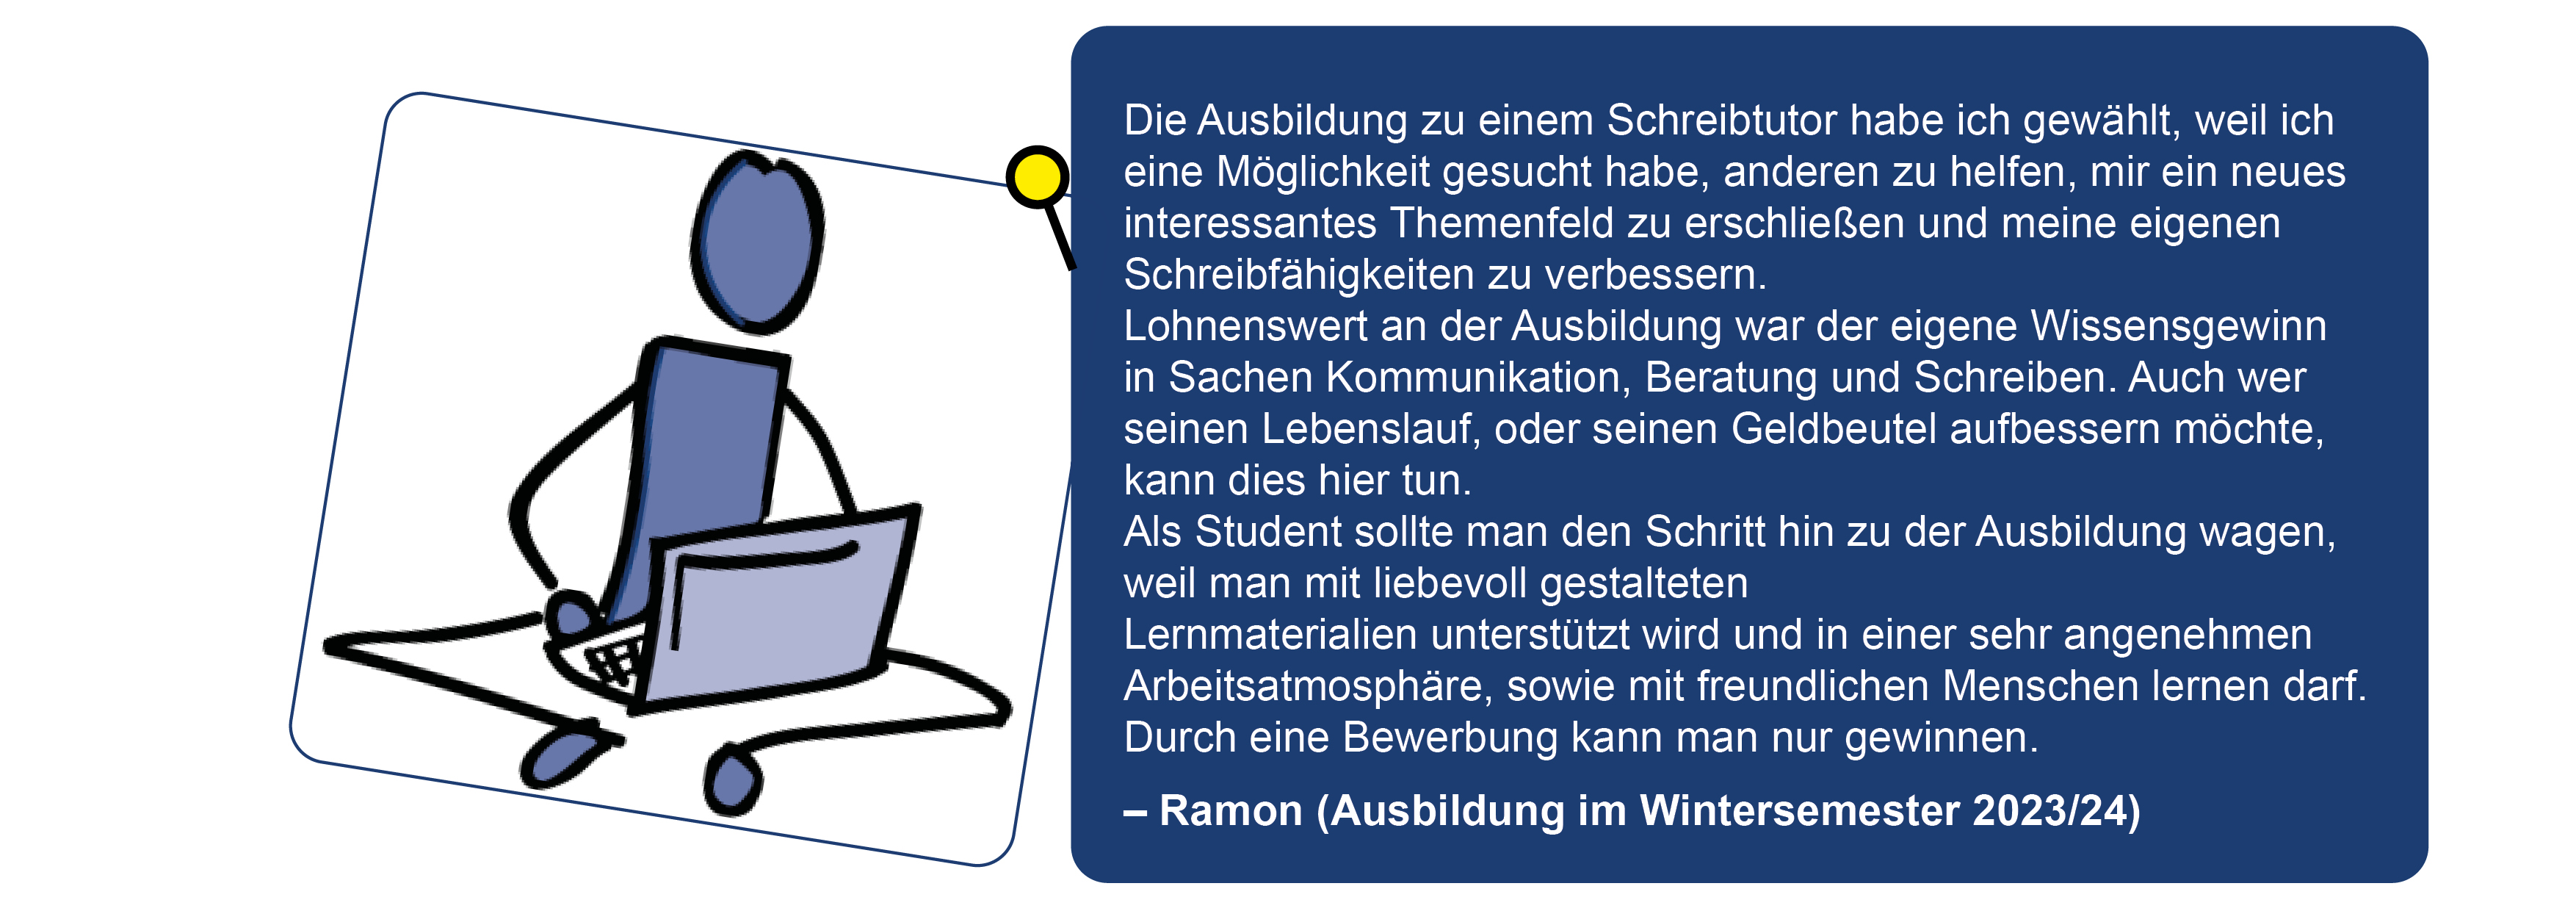 Website_Steckbrief_OS_BewertungAusbildung_Ramon